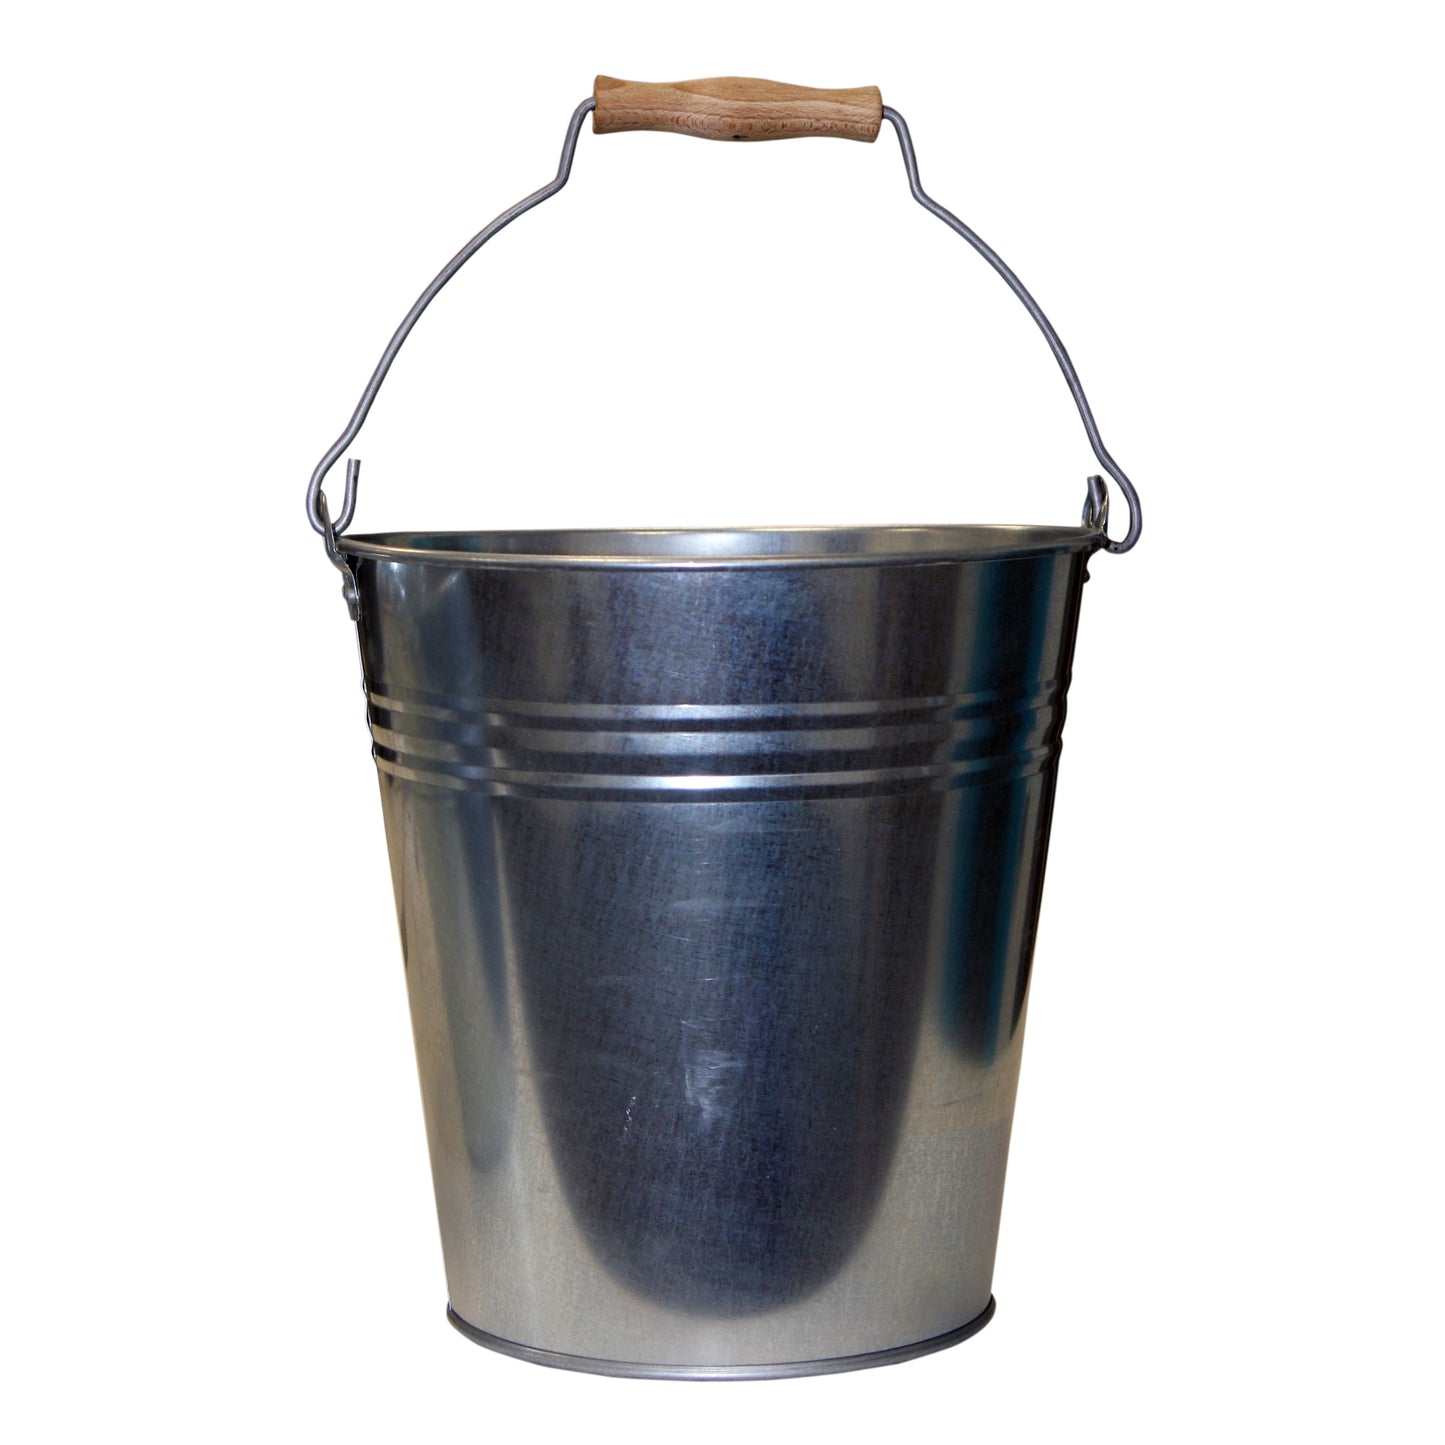 Galvanised Metal Bucket with Wooden Handle